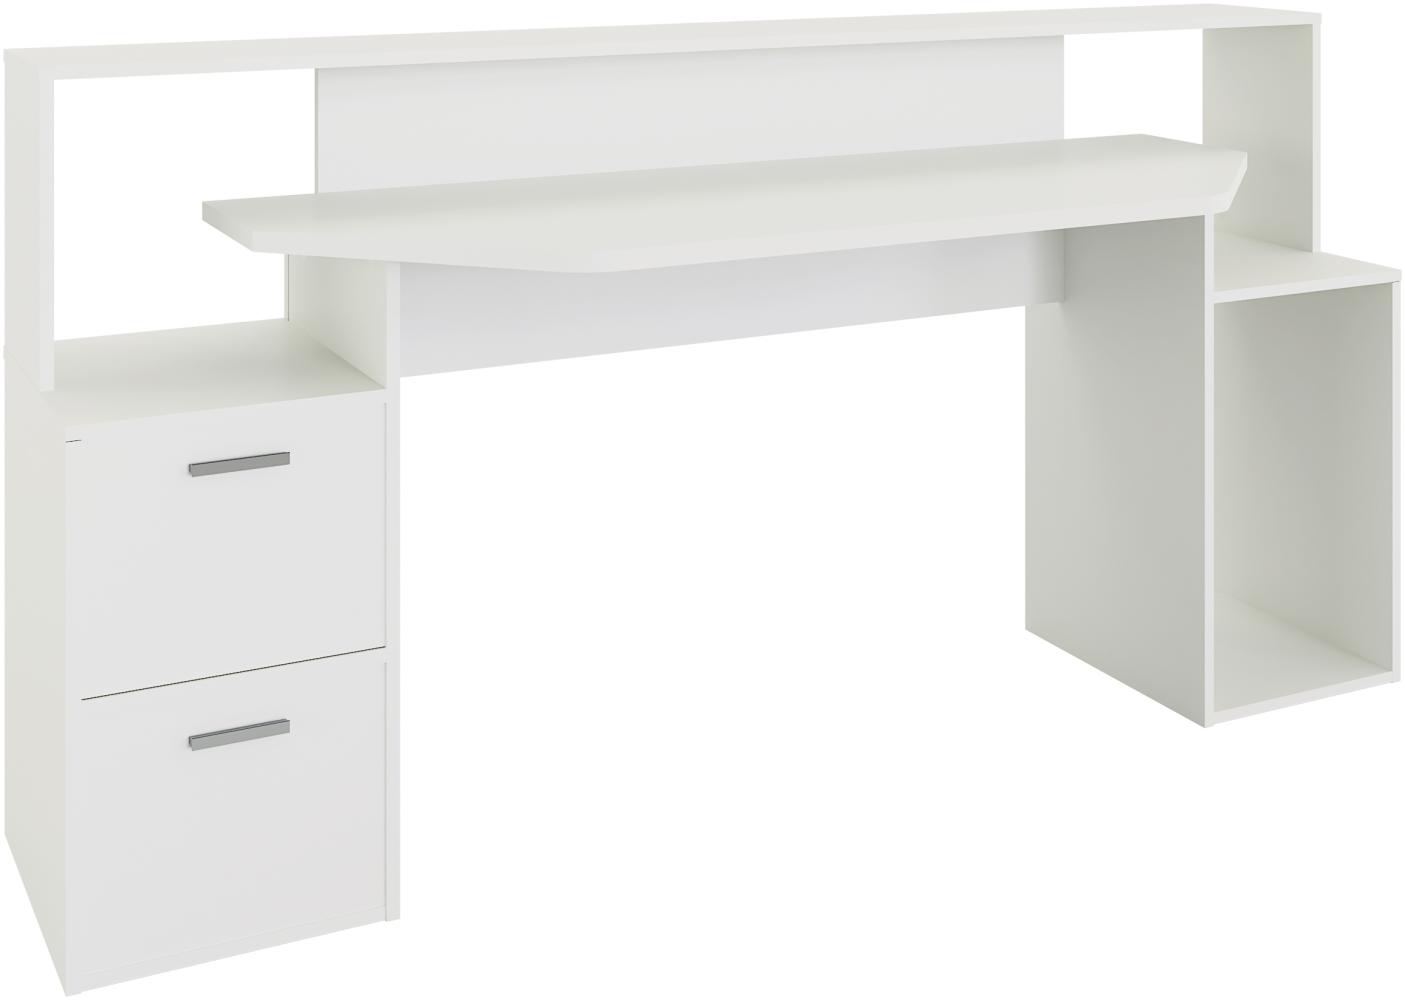 FMD Möbel - ZOCKER 3 - Schreibtisch - melaminharzbeschichtete Spanplatte - weiß - 180,4 x 92,5 x 59,8cm Bild 1